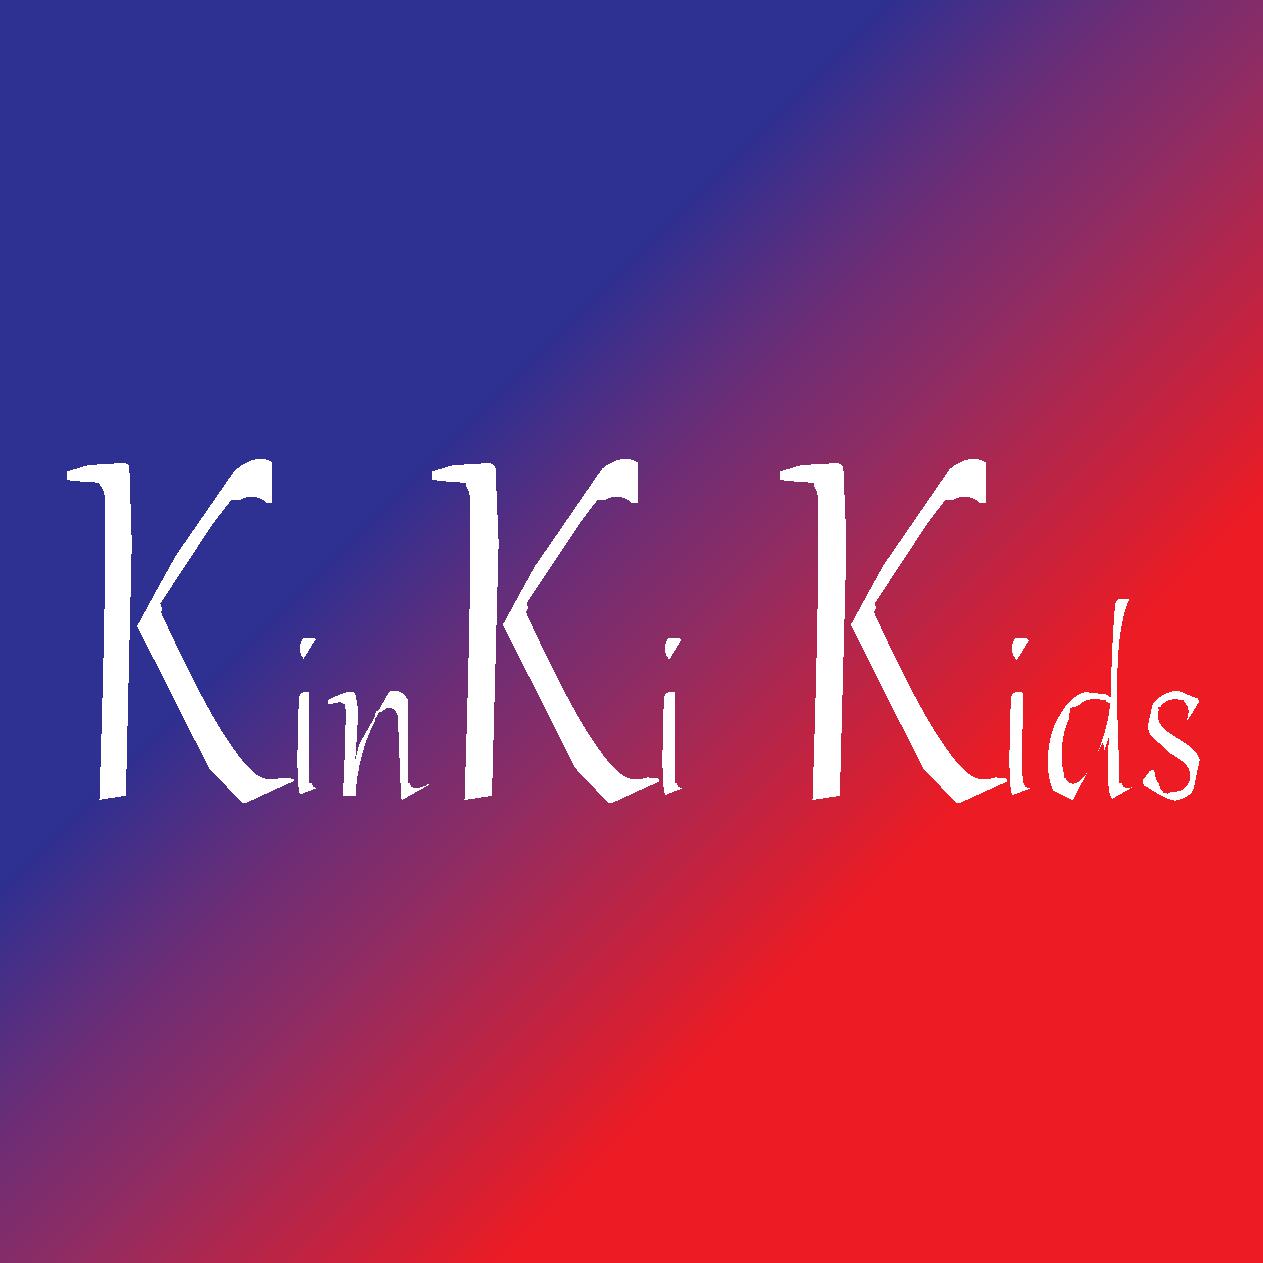 KinKi Kids堂本剛、3月末での退所発表「アーティストとして進む為には環境を大きく変化させる必要がある」